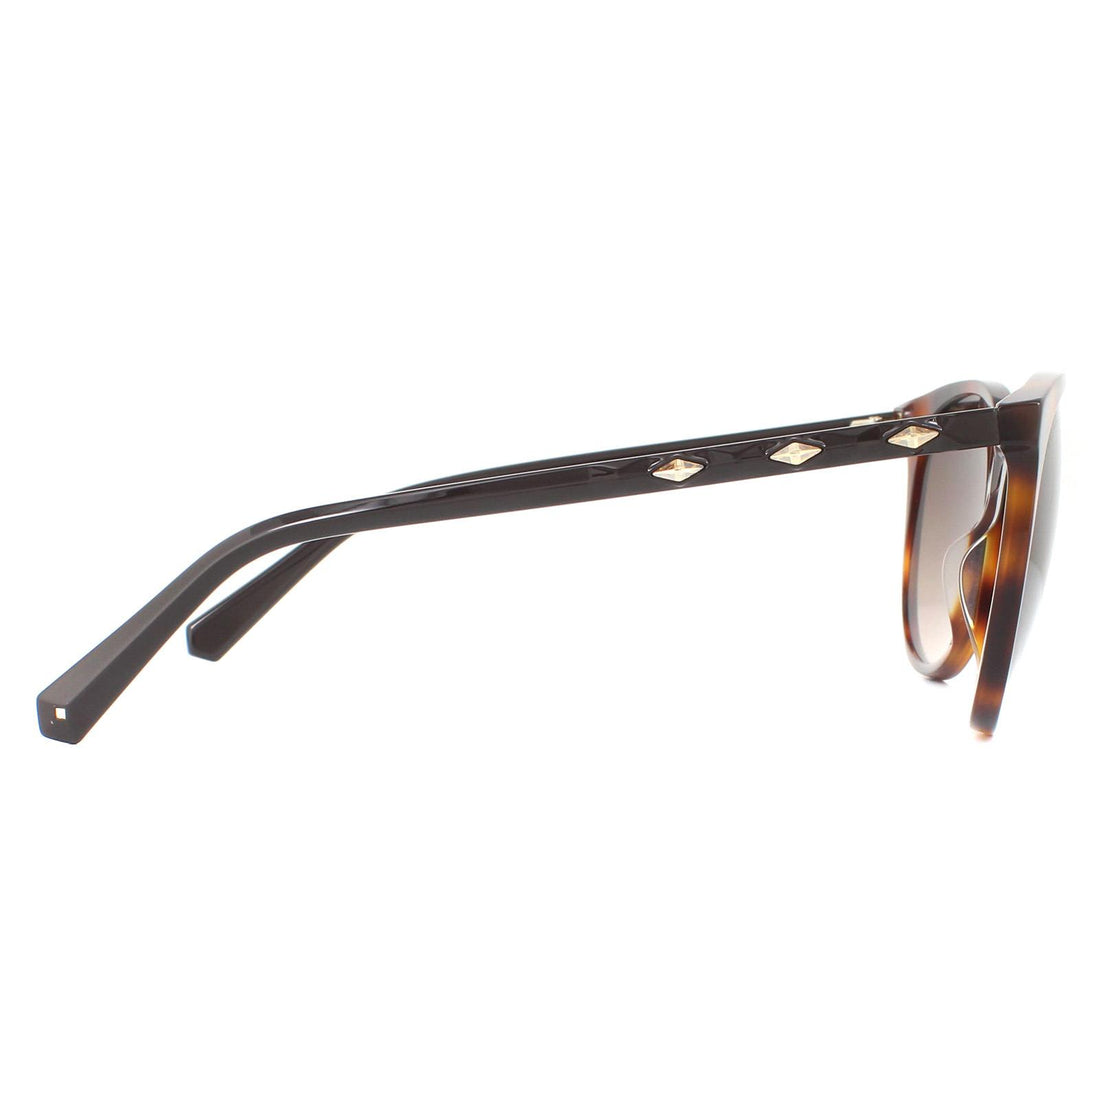 Swarovski SK0223 Sunglasses